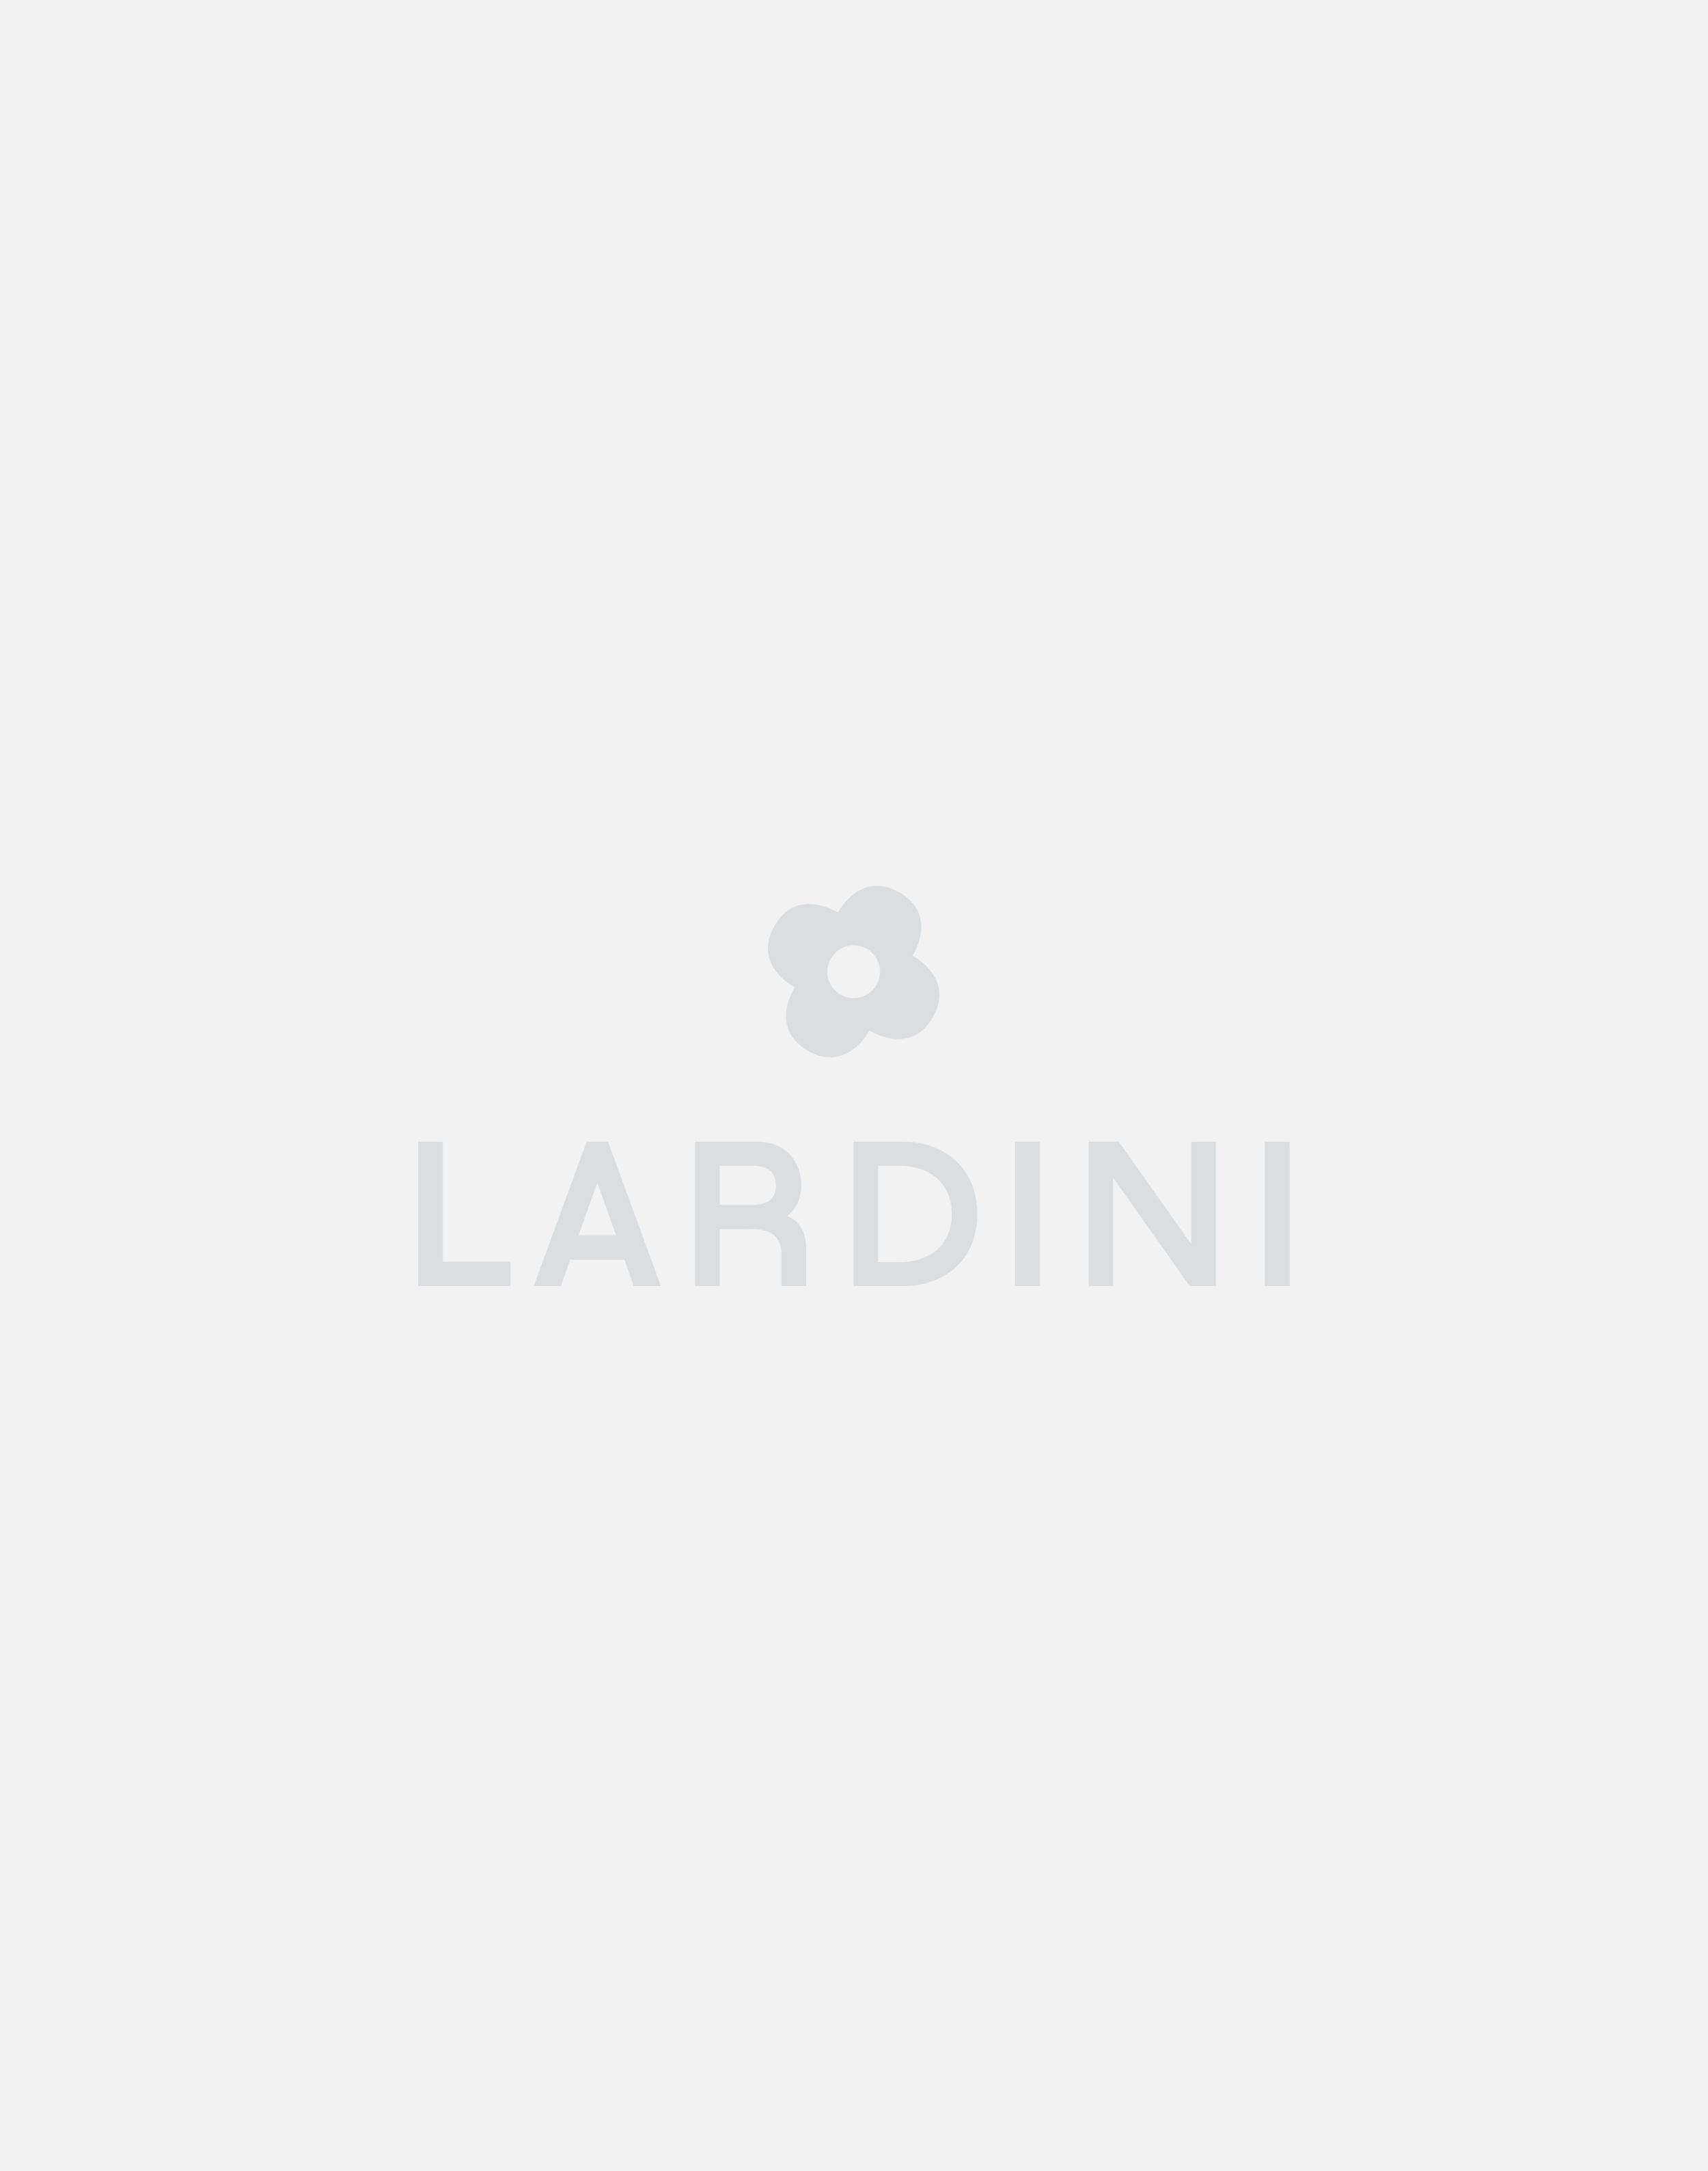 White cotton and linen cardigan - Luigi Lardini capsule 2